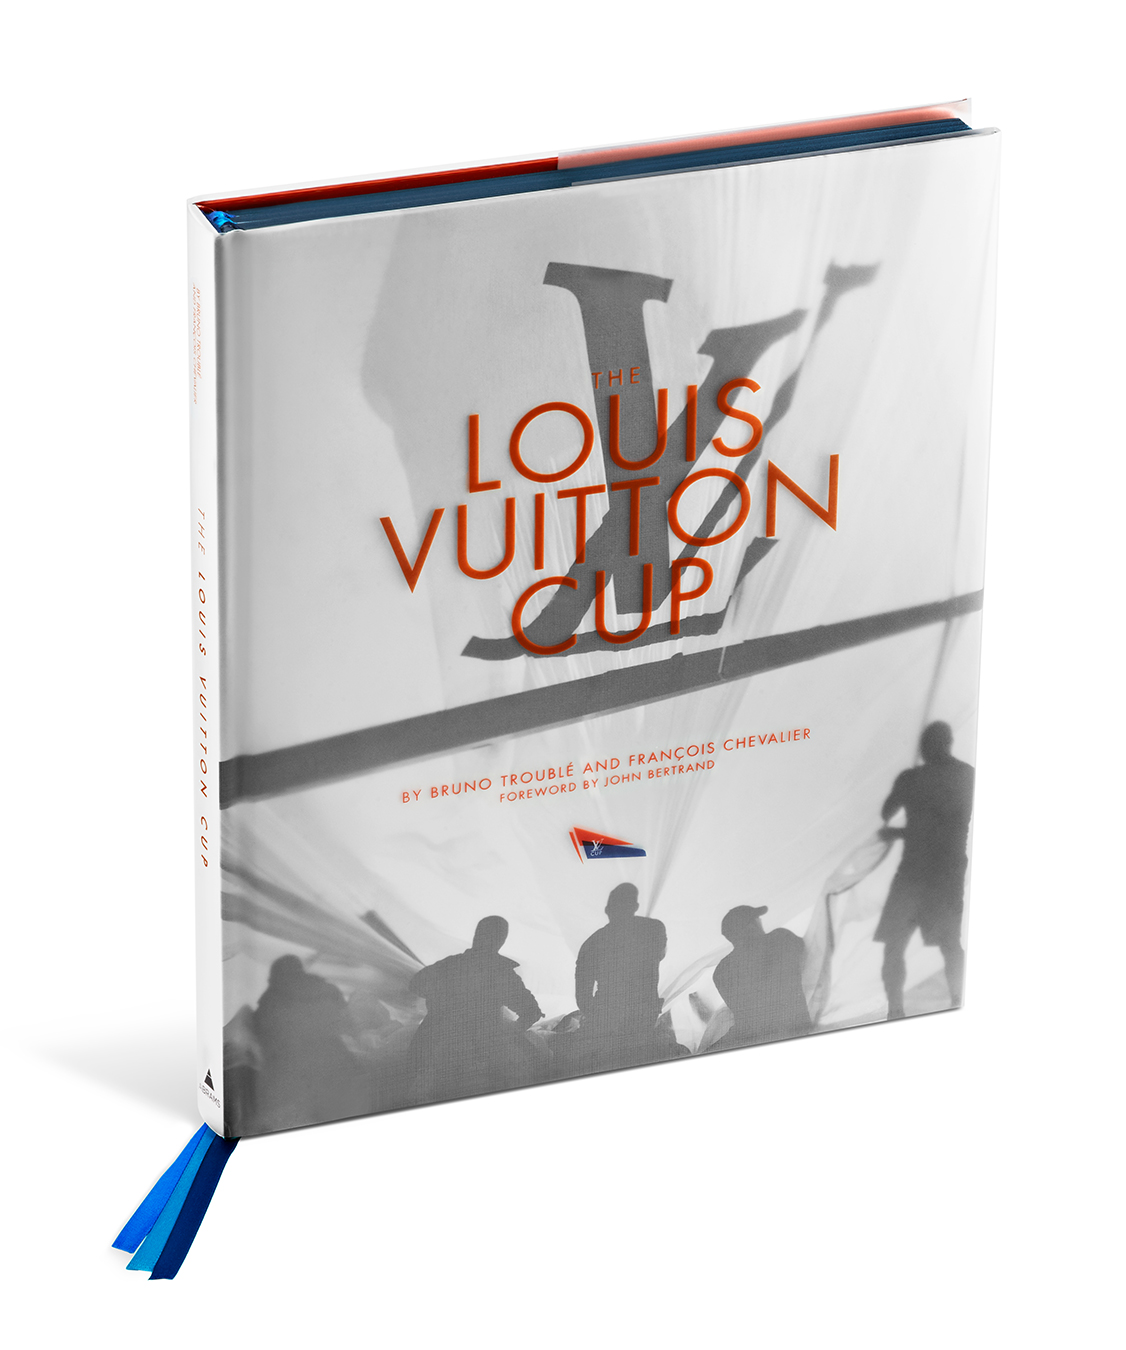 NUVO Blog: Louis Vuitton Cup